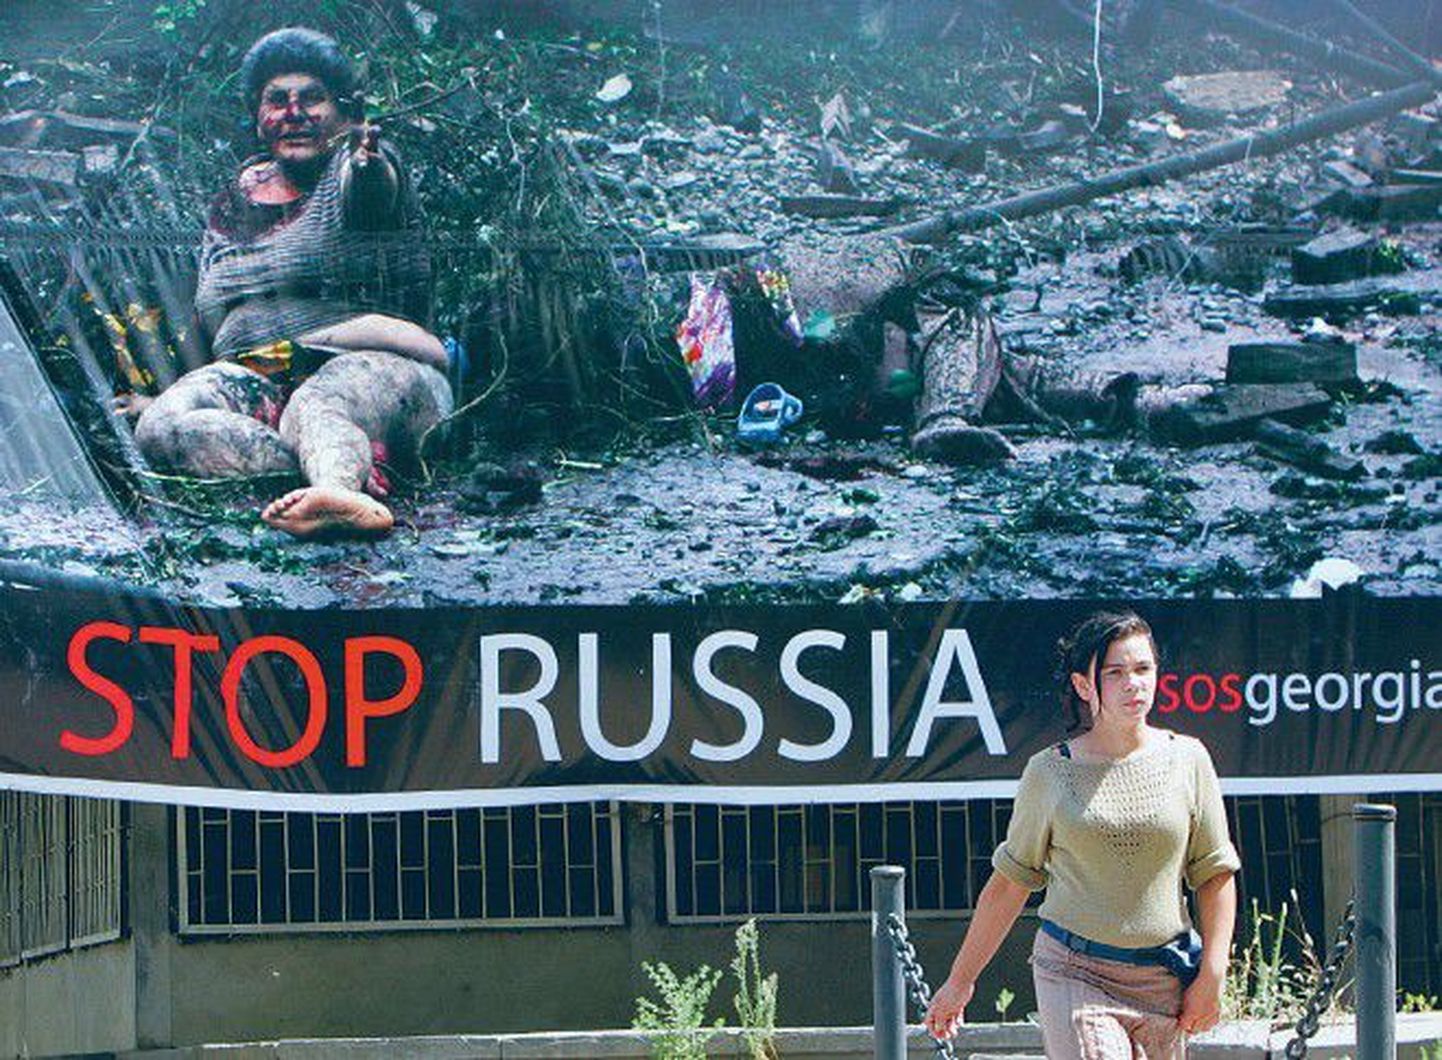 Tüdruk augusti lõpul Thbilisi kesklinnas plakati juures, mis nõuab Venemaa tegevuse peatamist Gruusias.